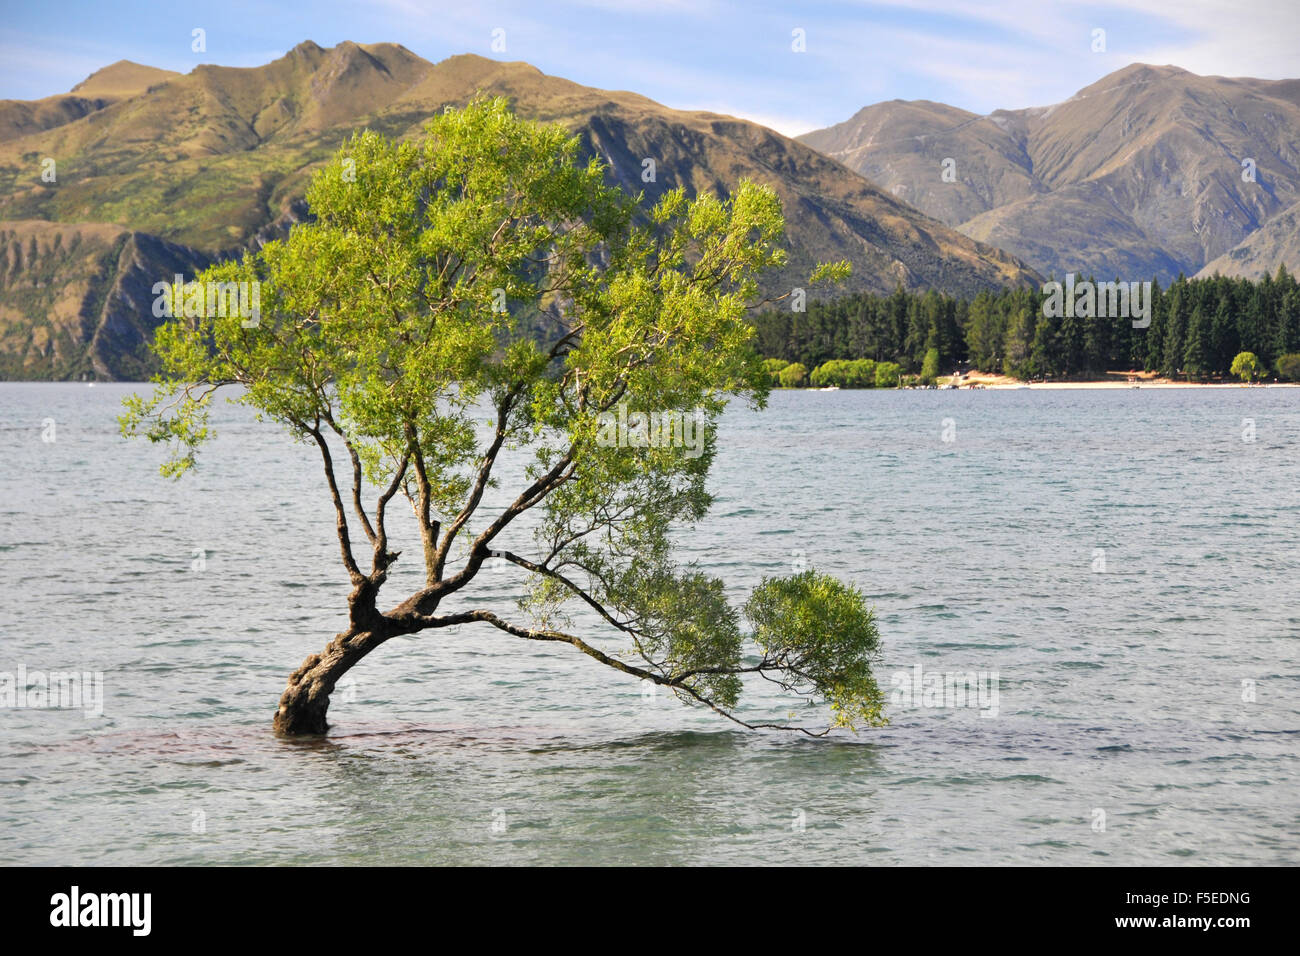 'That Wanaka Tree', a willow tree, Salix sp., at Lake Wanaka, a landmark of Wanaka and the most famous tree in New Zealand Stock Photo